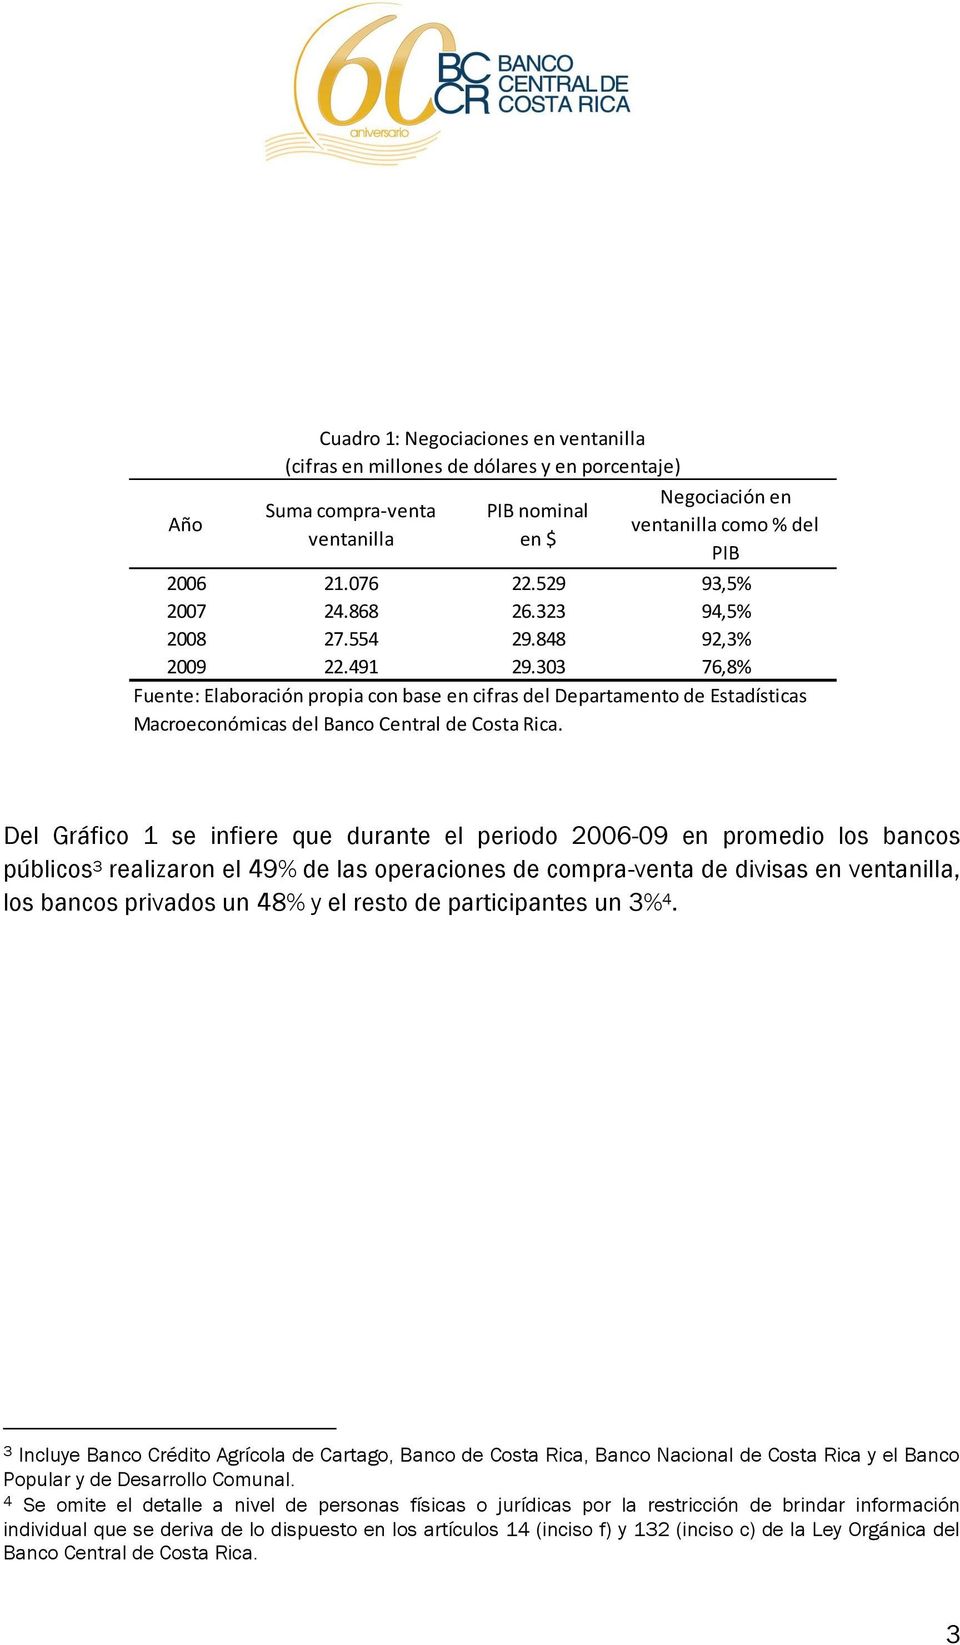 303 76,8% Fuente: Elaboración propia con base en cifras del Departamento de Estadísticas Macroeconómicas del Banco Central de Costa Rica.